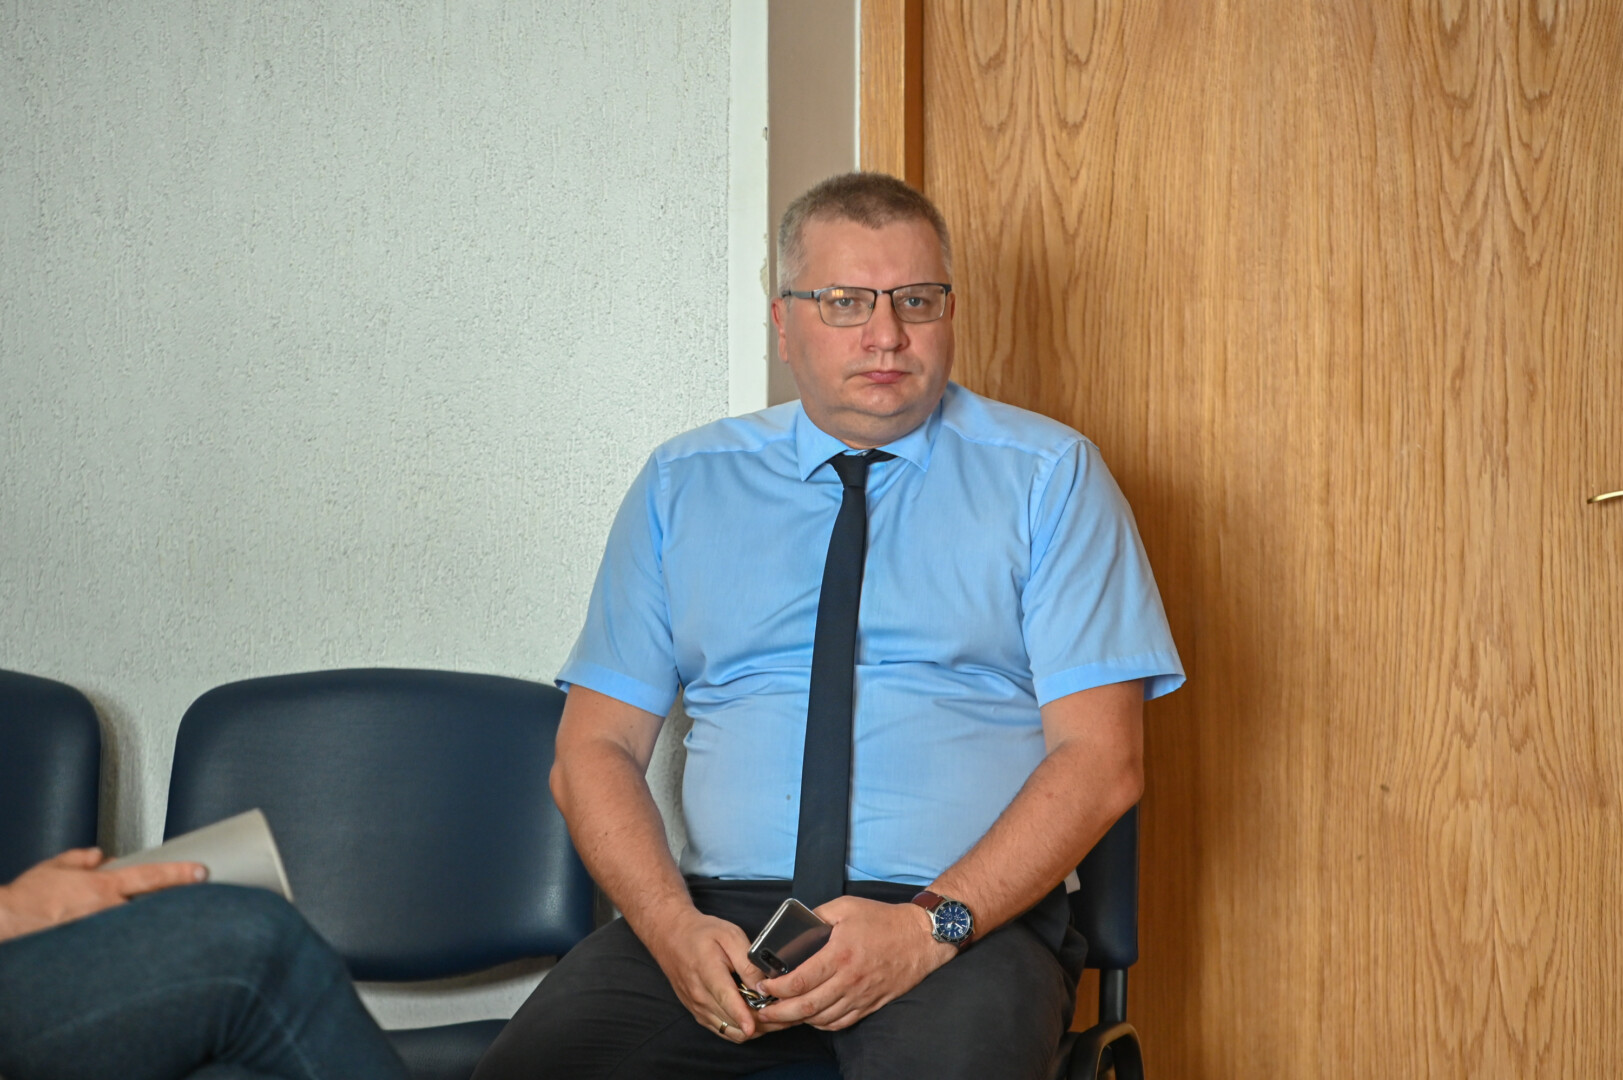 Nuo 2015-ųjų rajono Savivaldybės administracijos direktoriumi dirbęs Eugenijus Lunskis iš pareigų atleistas kaip praradęs mero pasitikėjimą ir be jokios išeitinės išmokos. P. ŽIDONIO nuotr. 